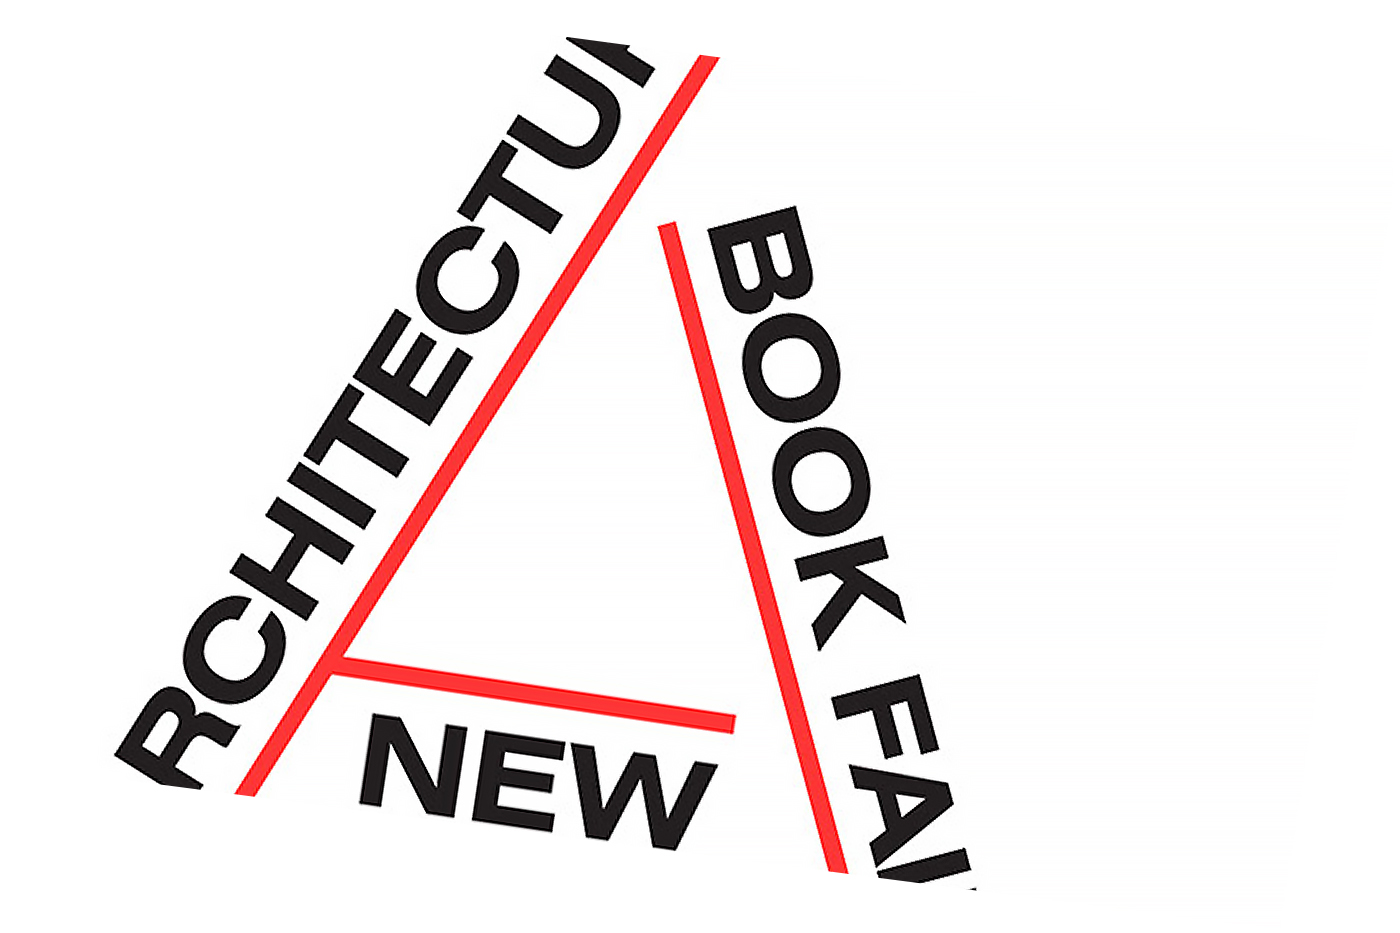 Thumbnail del proyecto de la feria de libros de arquitectura de Nueva York de 2018